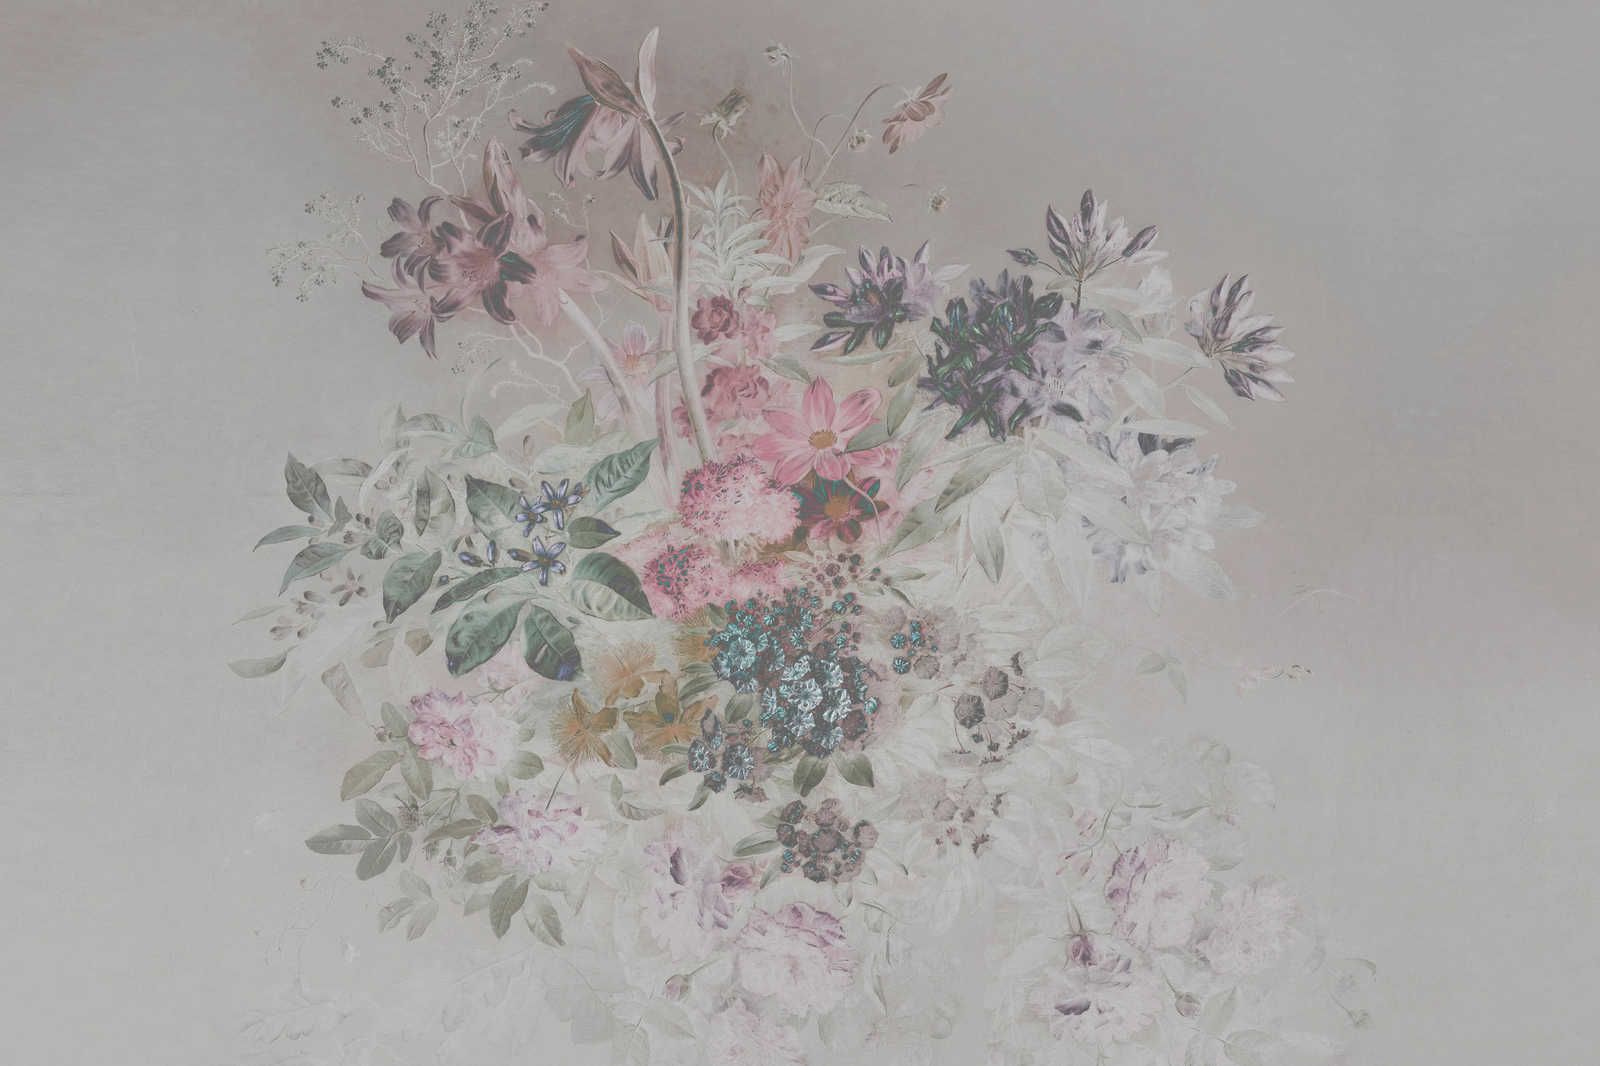             Blumen Leinwandbild mit Pastellfarben Design – 0,90 m x 0,60 m
        